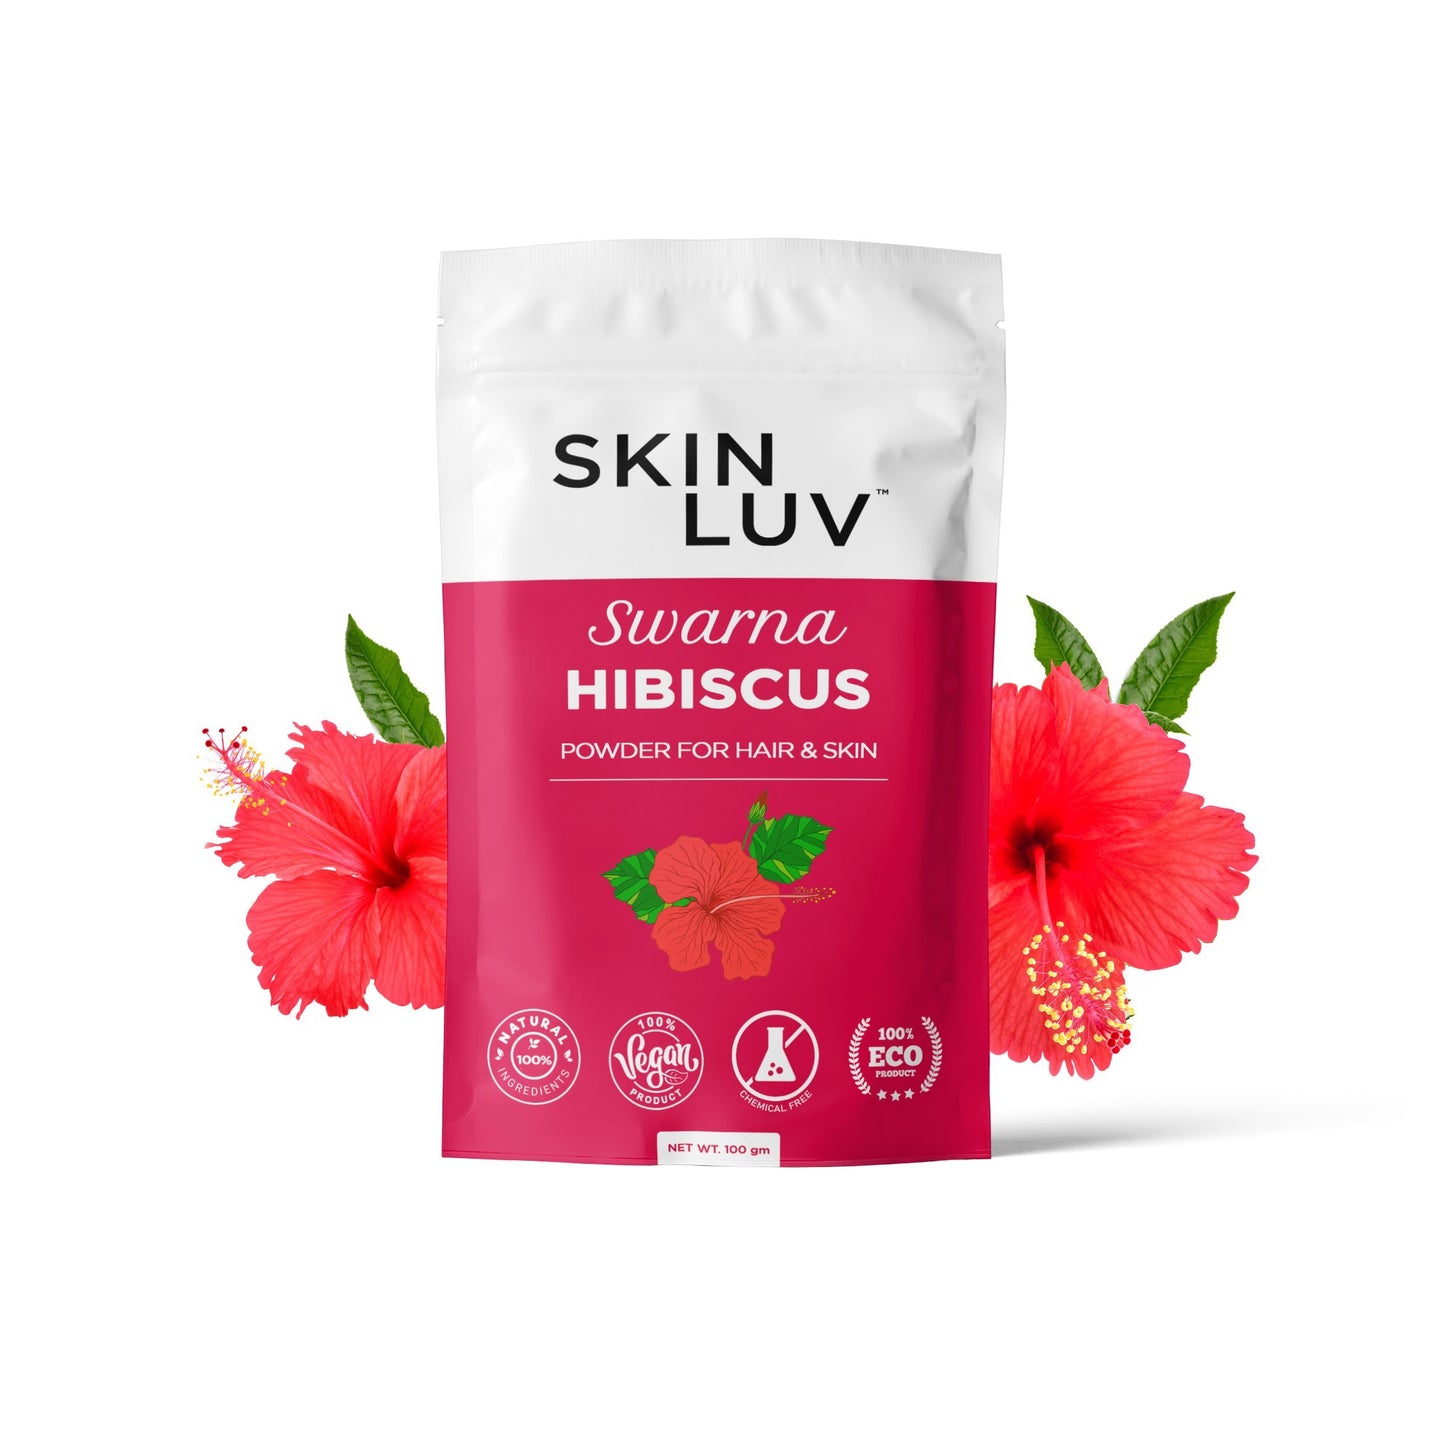 SKINLUV Swarna Hibiscus Powder For Skin & Hair, 100% Pure & Natural, Vegan, Chemical Free 100gm - Skinluv.in